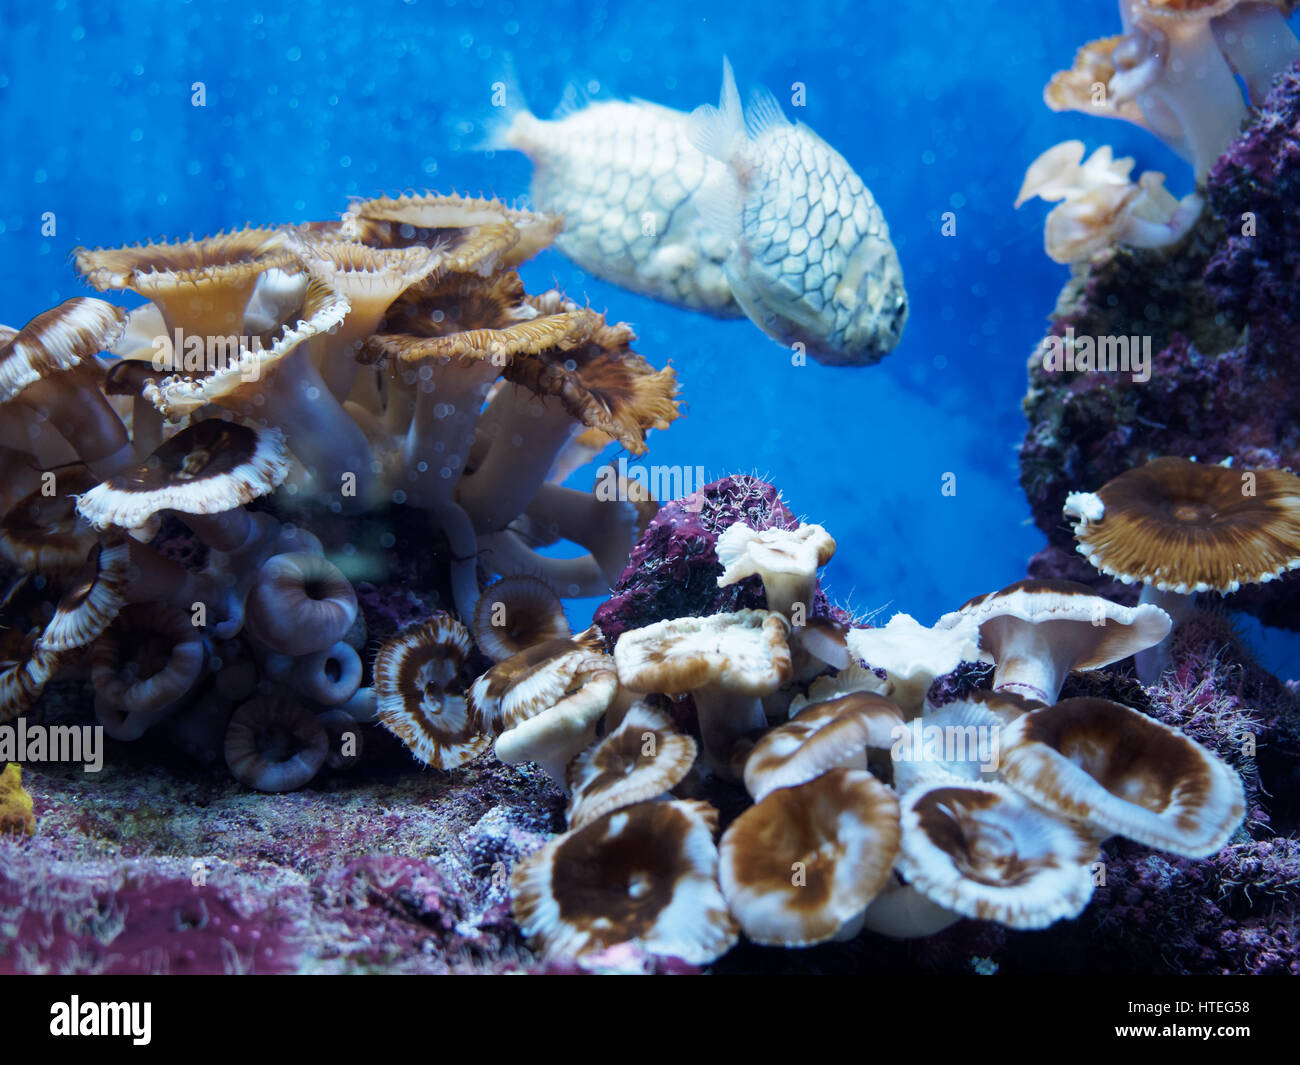 Australian Pineapplefish Cleidopus gloriamaris in Monaco aquarium Stock Photo